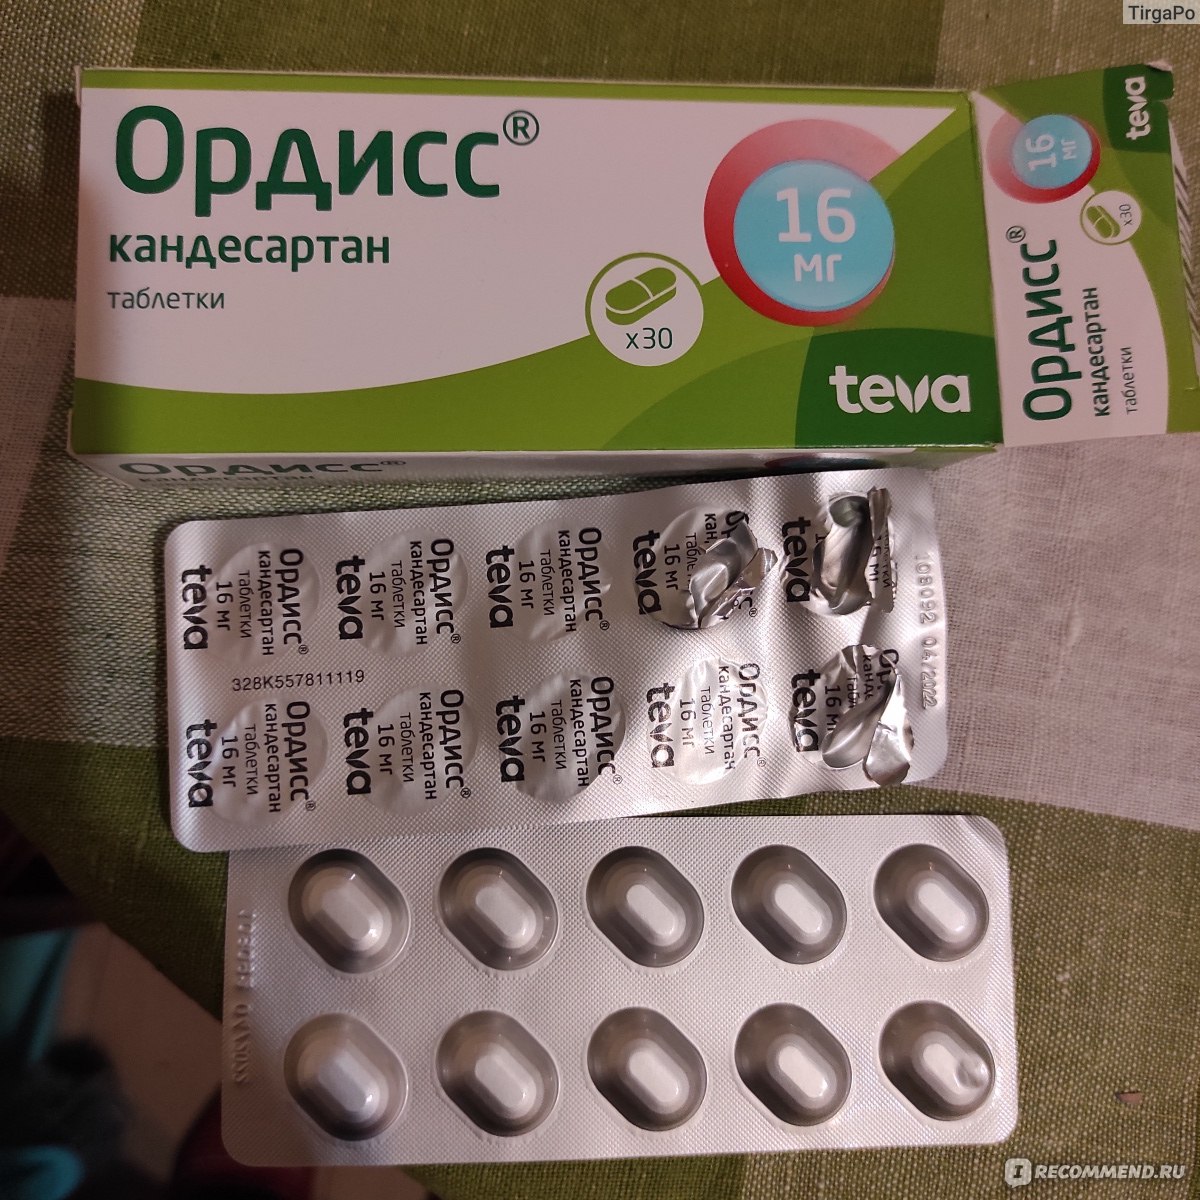 Таблетки TeVa Ордисс - «Хорошие таблетки для длительной терапии при .